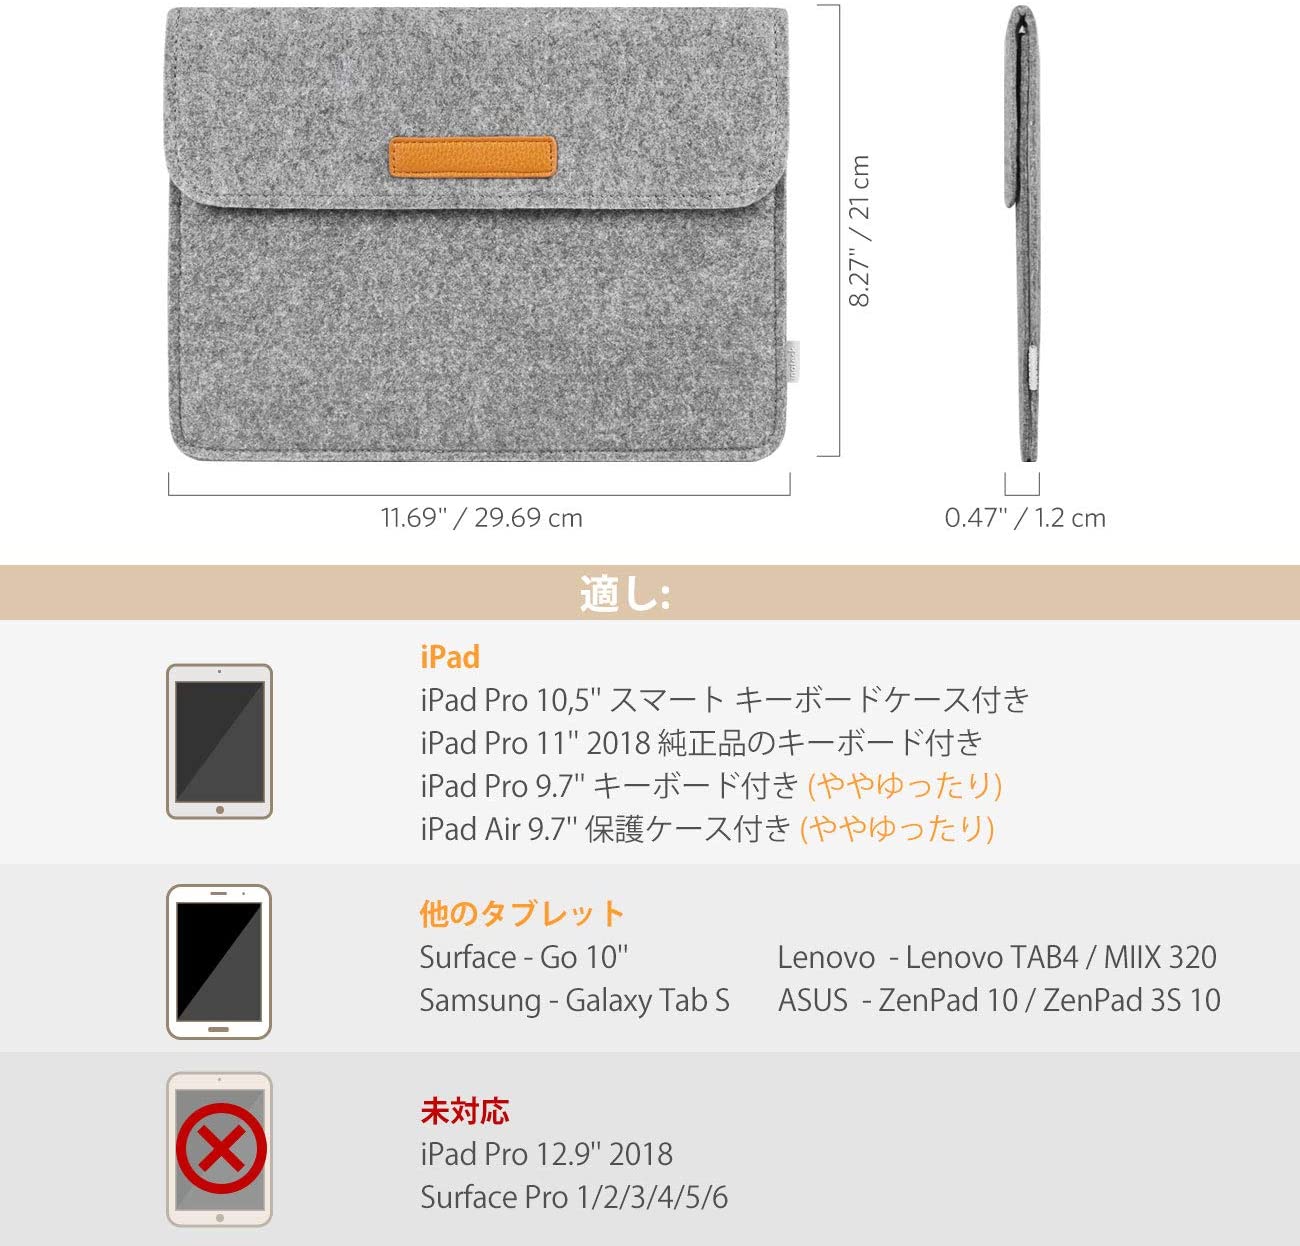 9.7-11インチ iPad Pro/Air/Surface Go/ Galaxy Tab ラップトップスリーブ MP1504, dark gray - Inateckバックパックジャパン